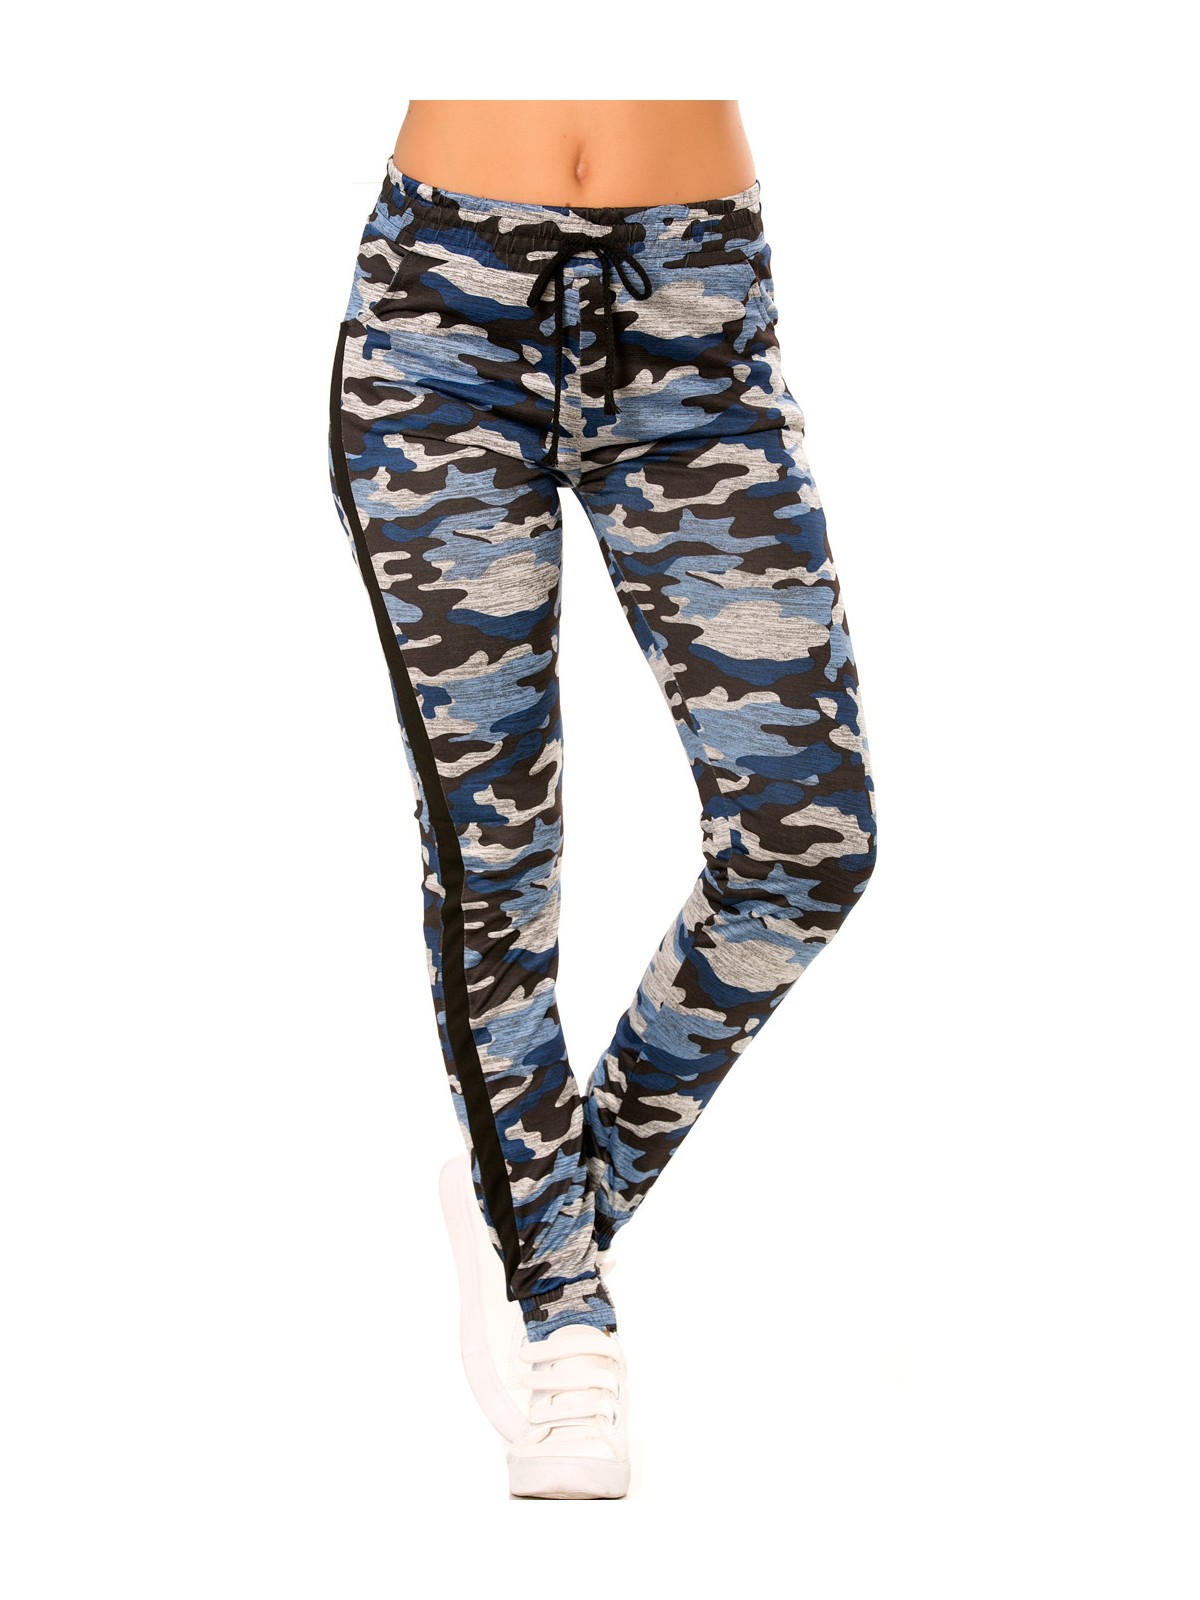 Pantalon jogging militaire bleu avec poches et bandes noires. Enleg 9-104A. - 6